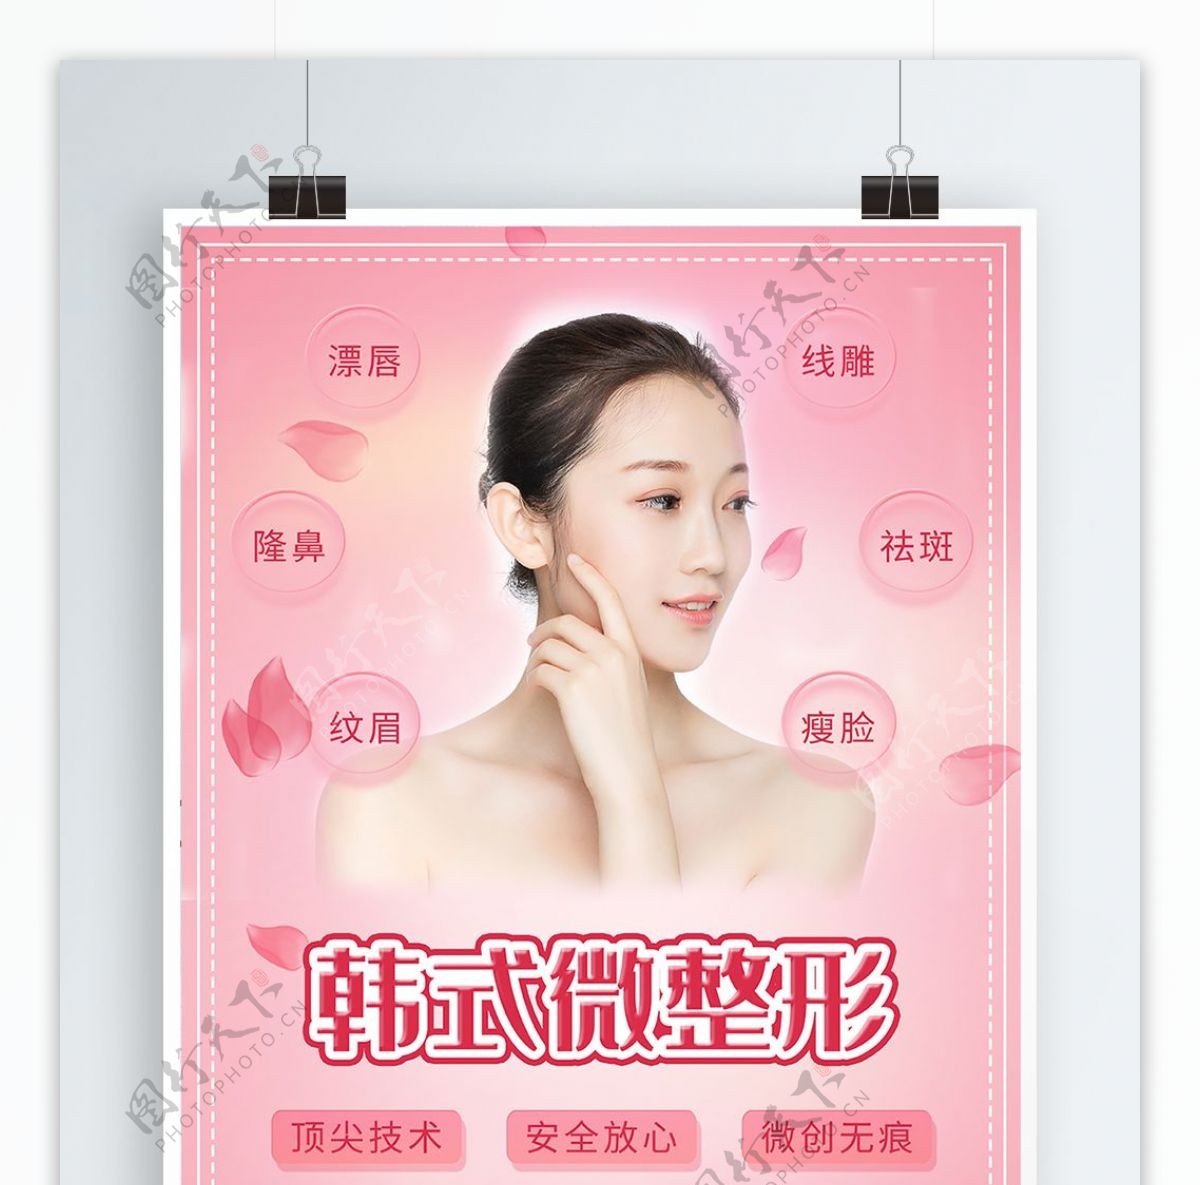 韩式微整形粉色浪漫海报